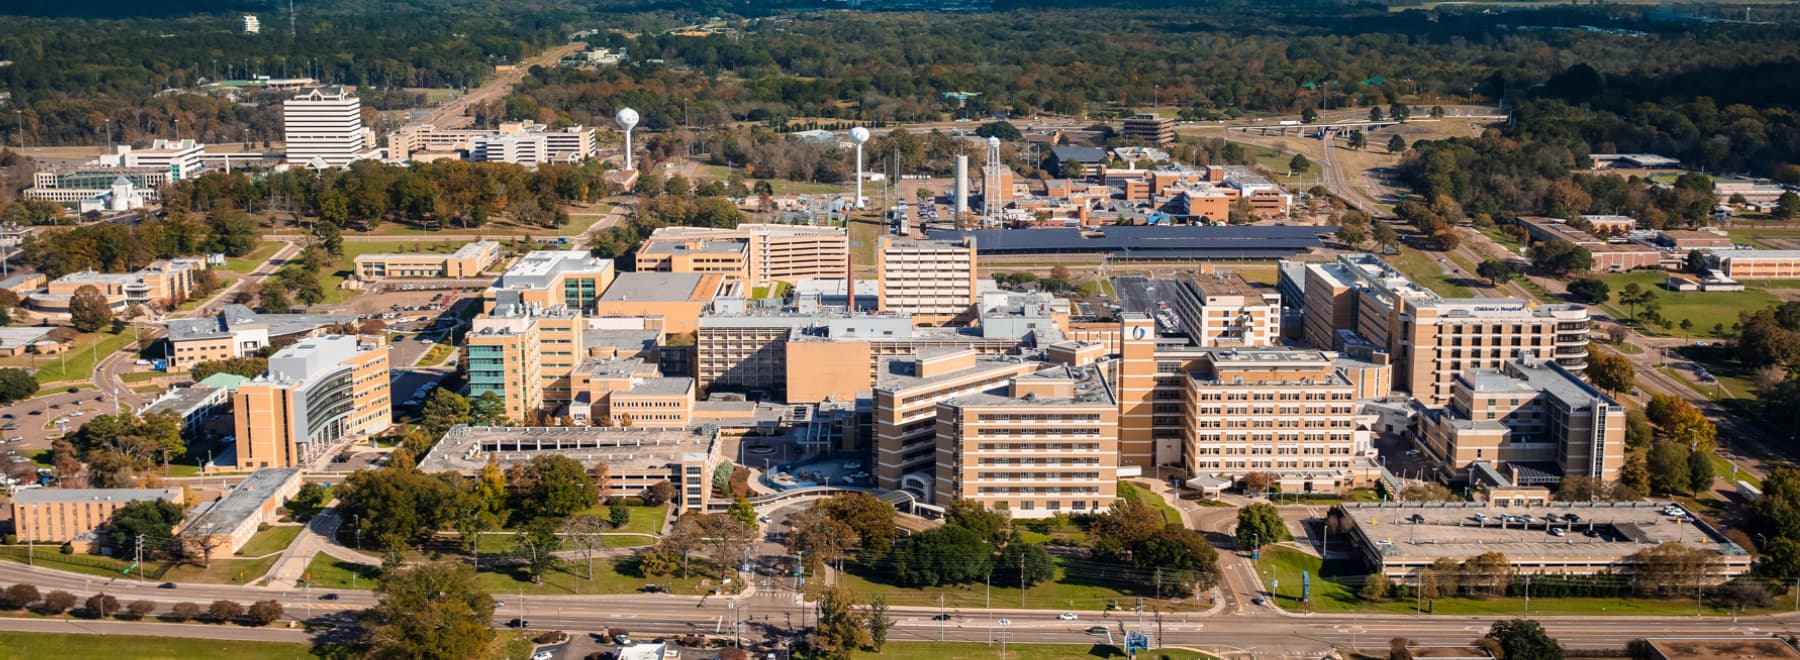 General Information University of Mississippi Medical Center